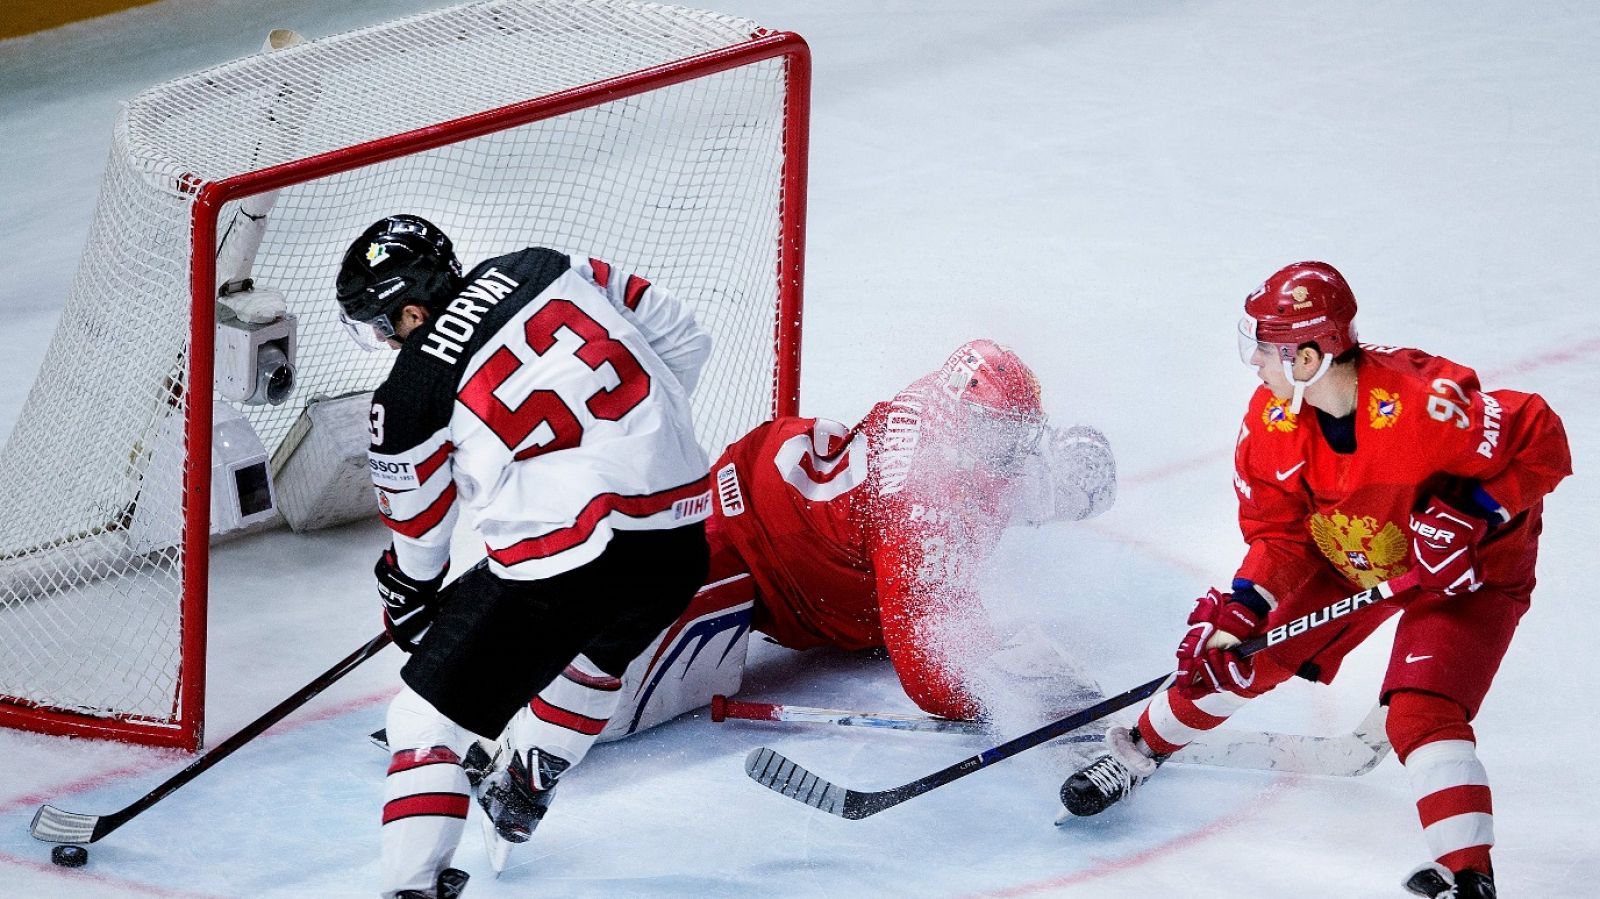 Hockey Hielo - Campeonato del Mundo. 1/4 final: Rusia - Canadá